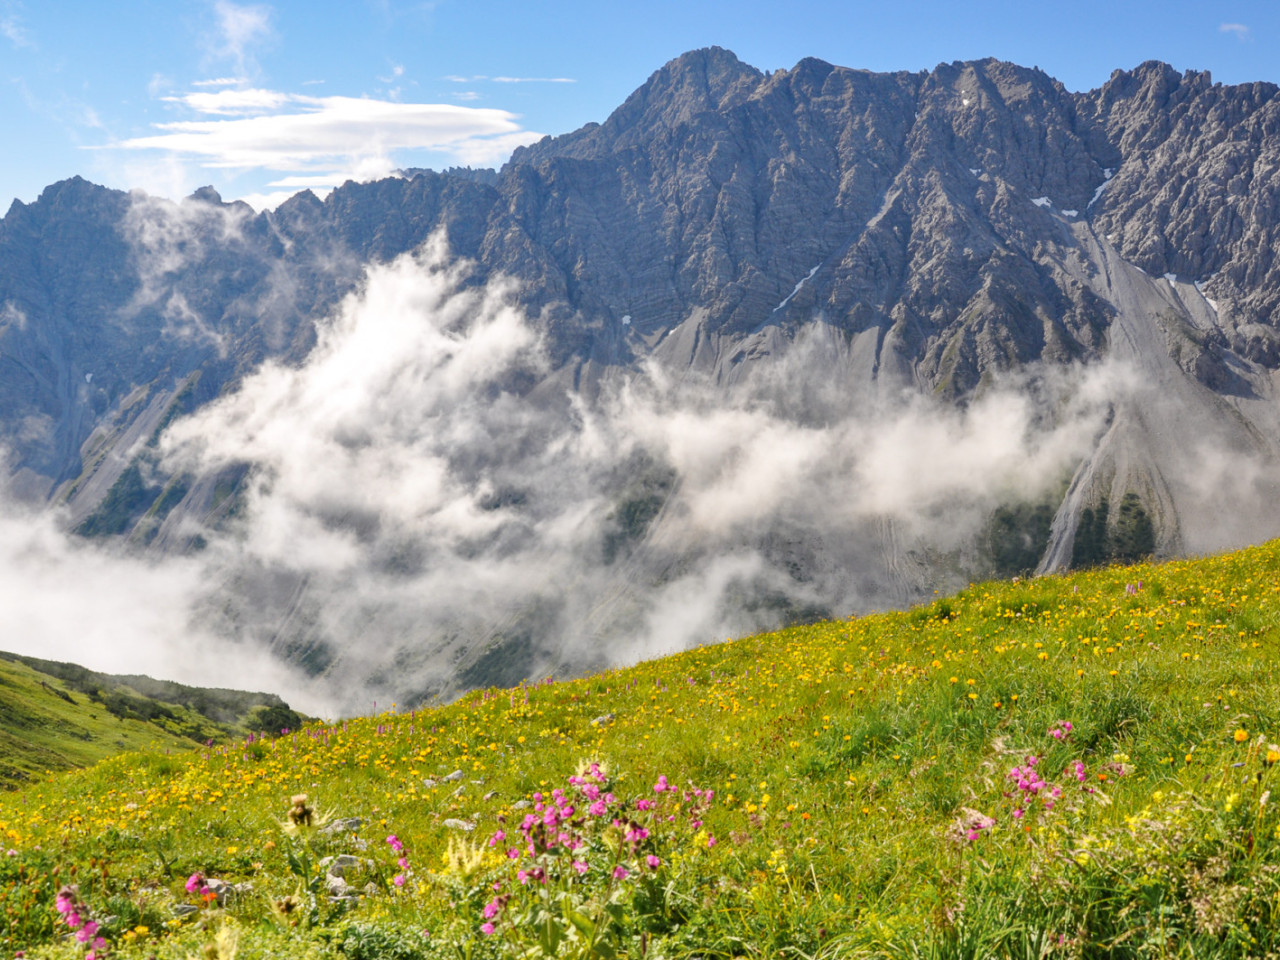  Alpenblumen oberhalb vom Hahntennjoch auf dem Weg zur Anhalter Hütte